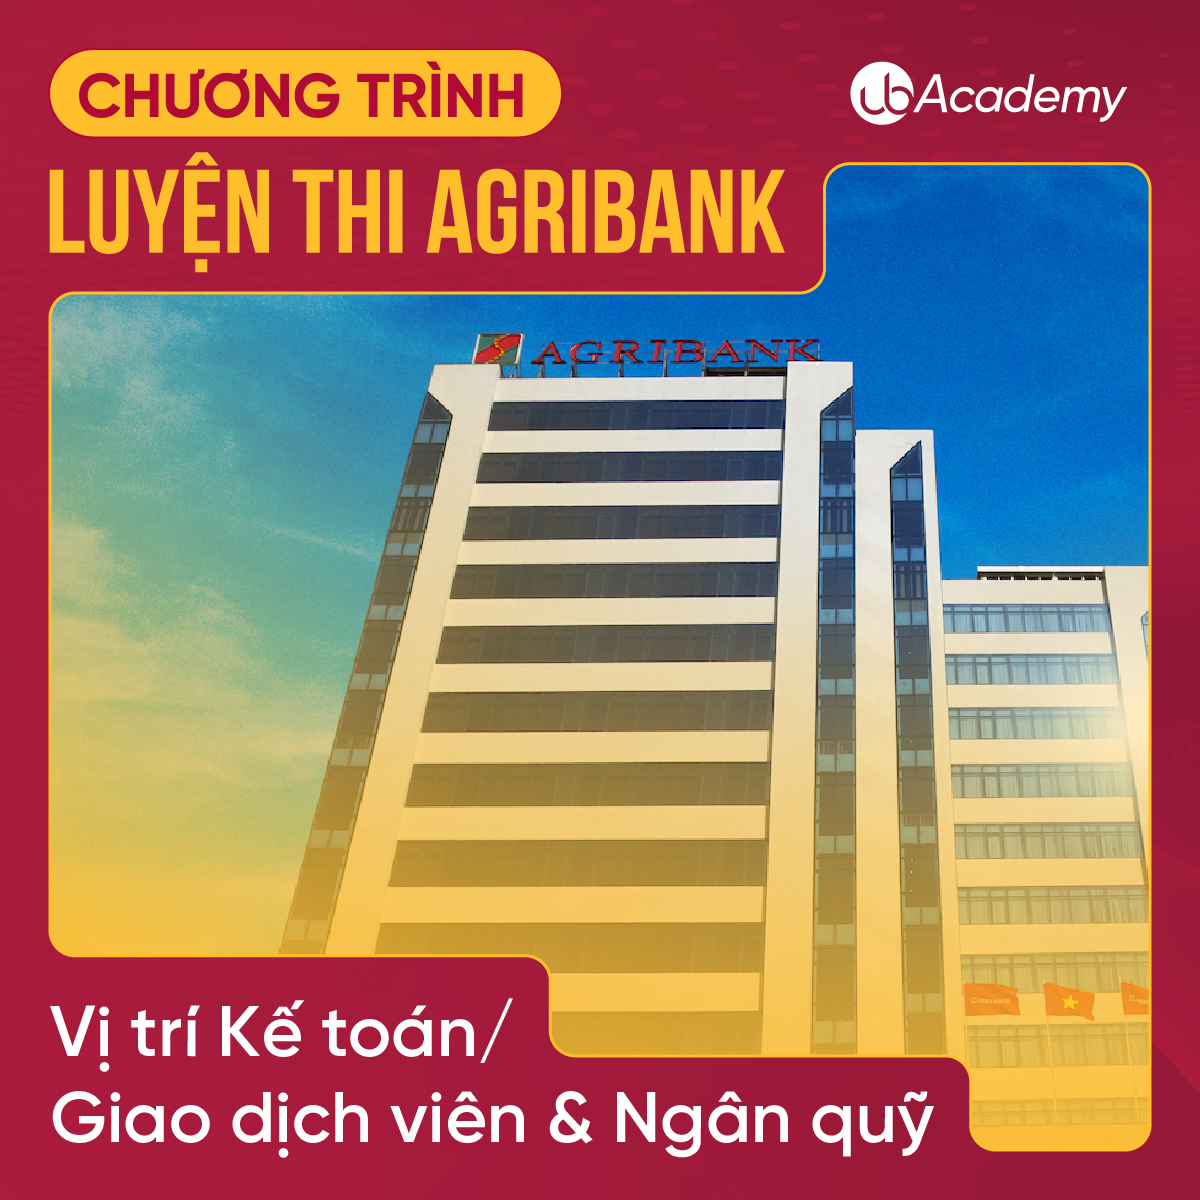 Chương trình luyện thi Agribank - Vị trí Kế toán/ Giao dịch viên & Ngân quỹ